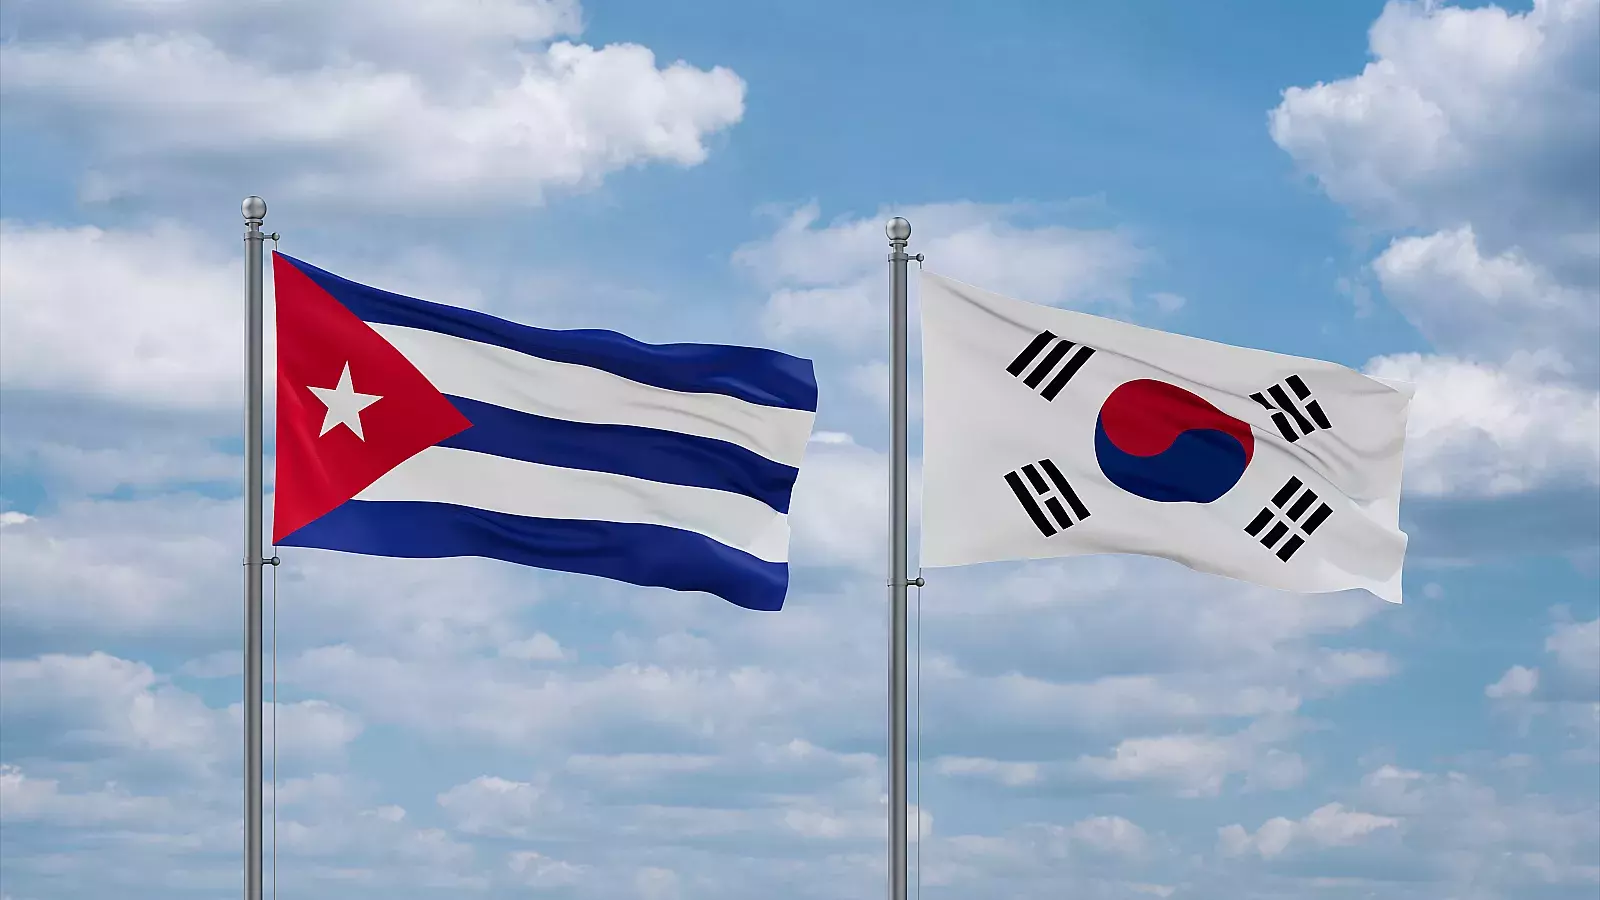 Banderas de Cuba y Corea del Sur